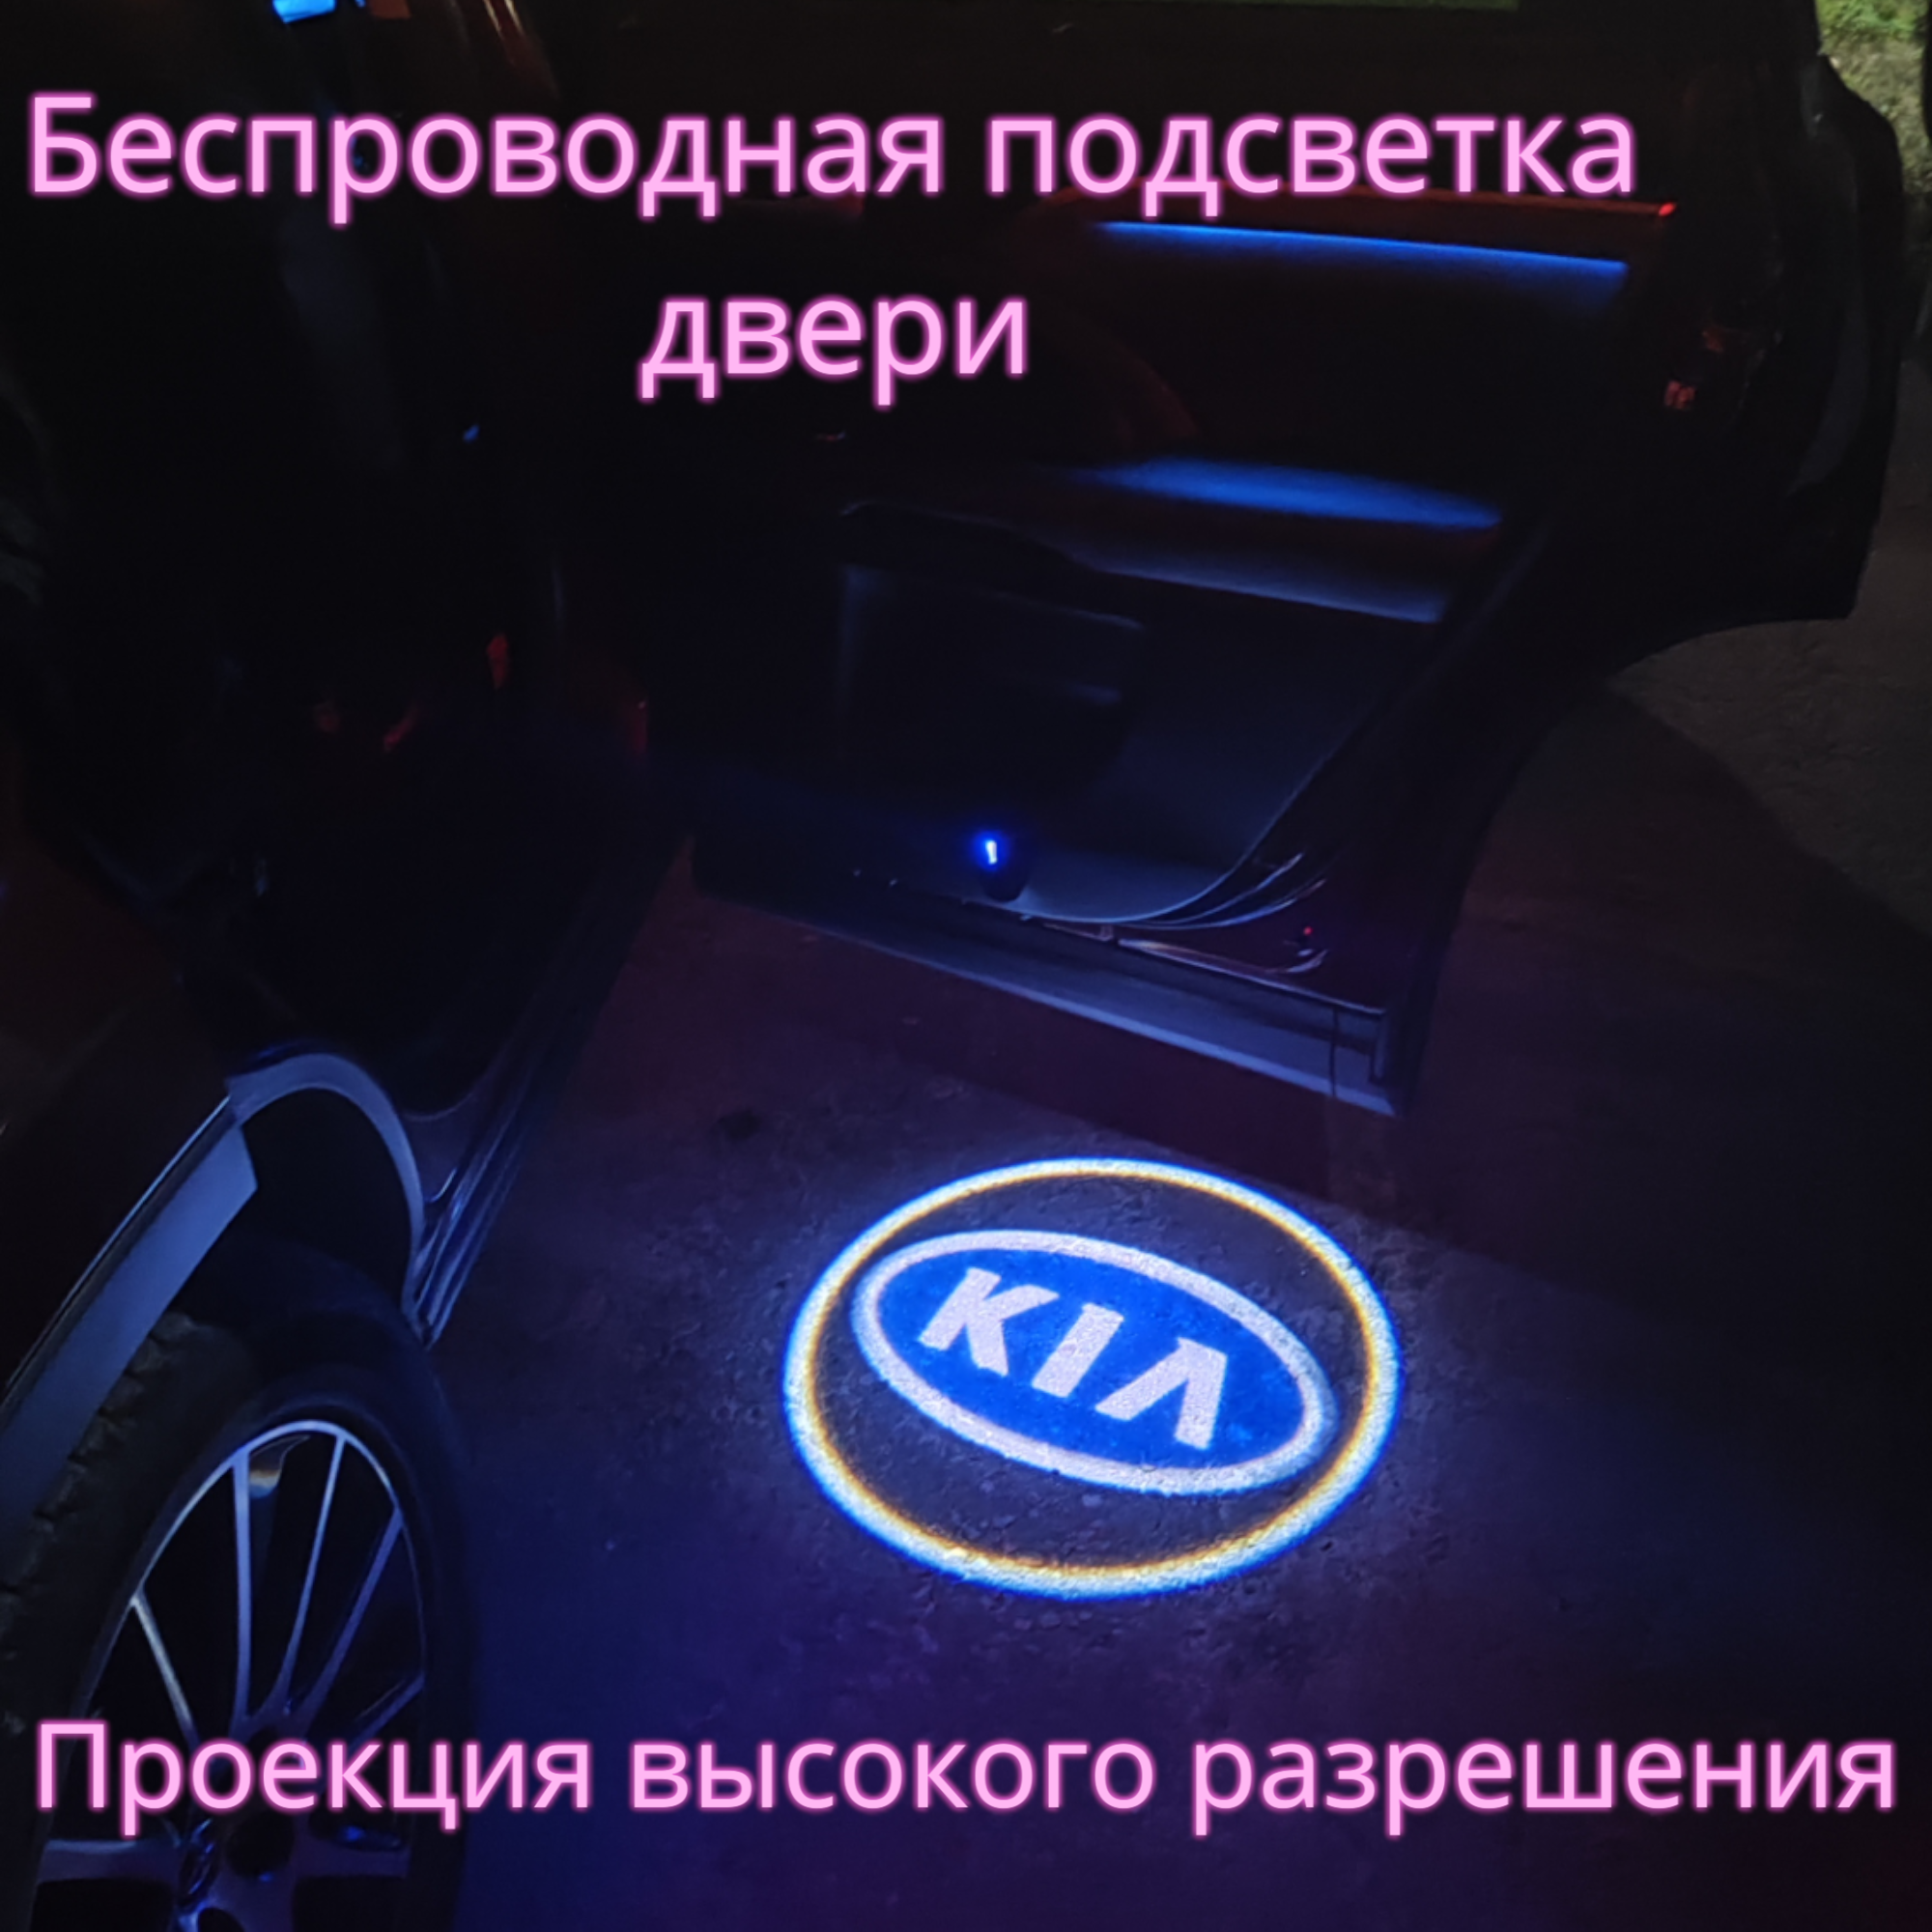 Проекция логотипа авто/Беспроводная подсветка логотипа KIA на двери(37)/Светильник высокого разрешения с двери авто (1 шт.)